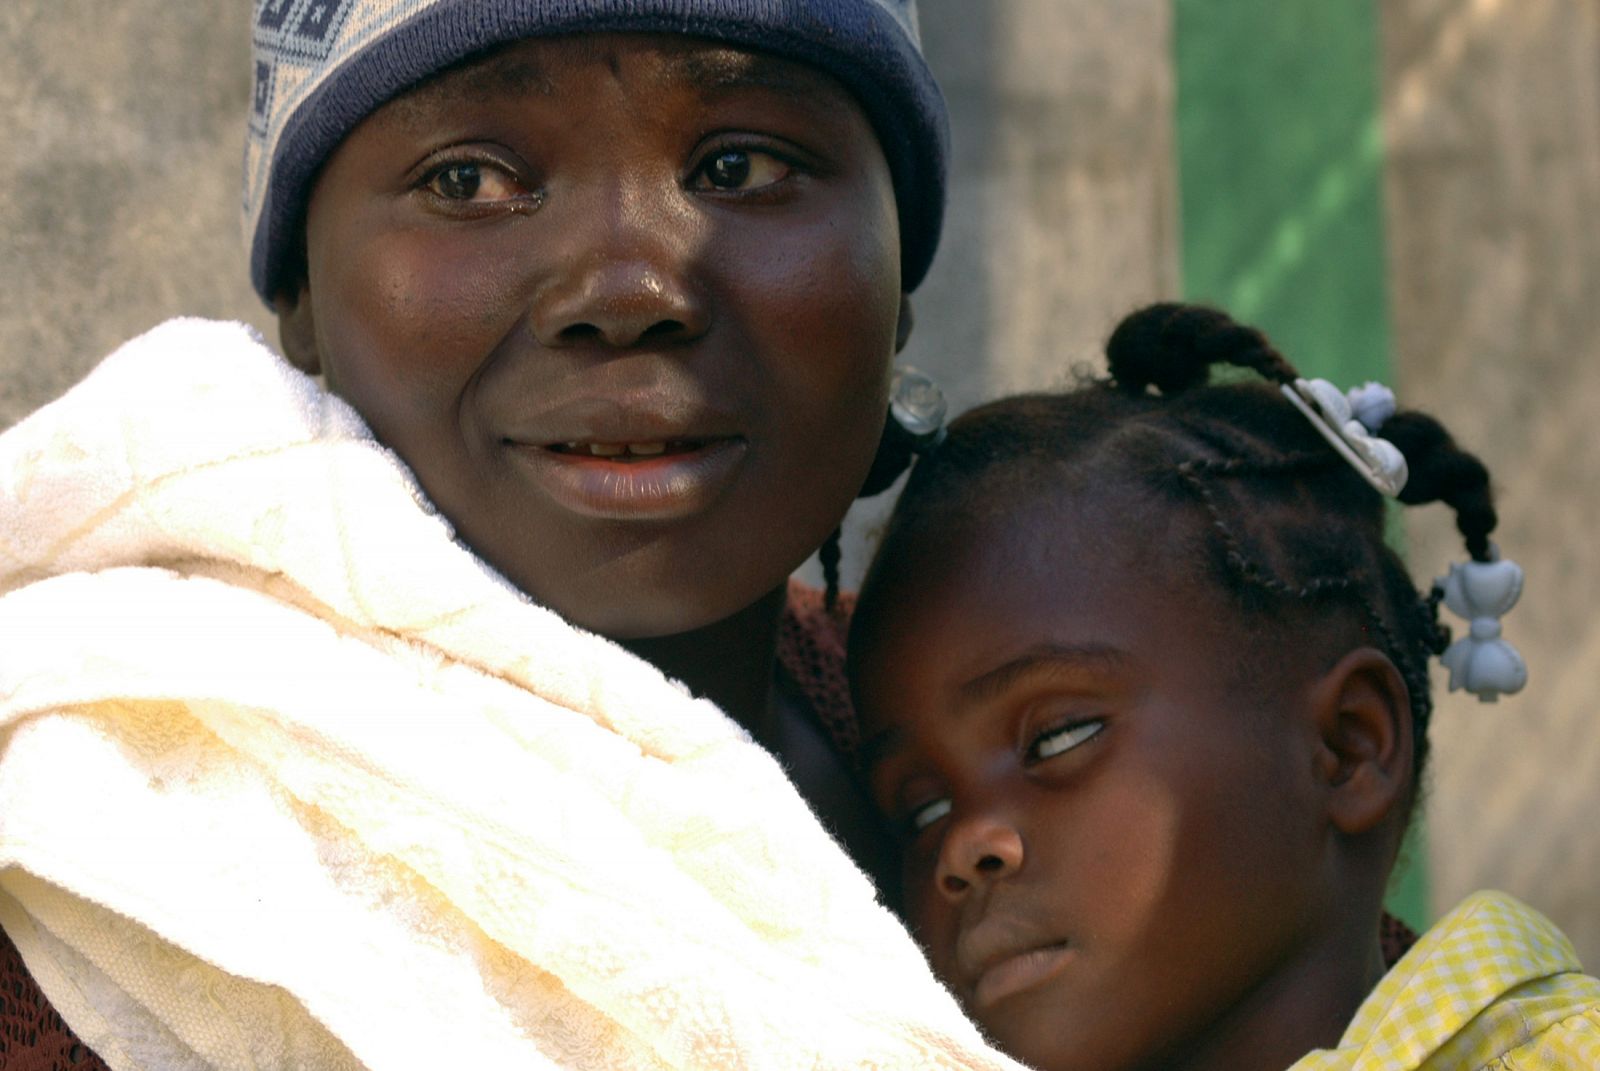 Una residente en Haití sostiene a su bebé, que está sufriendo de cólera.